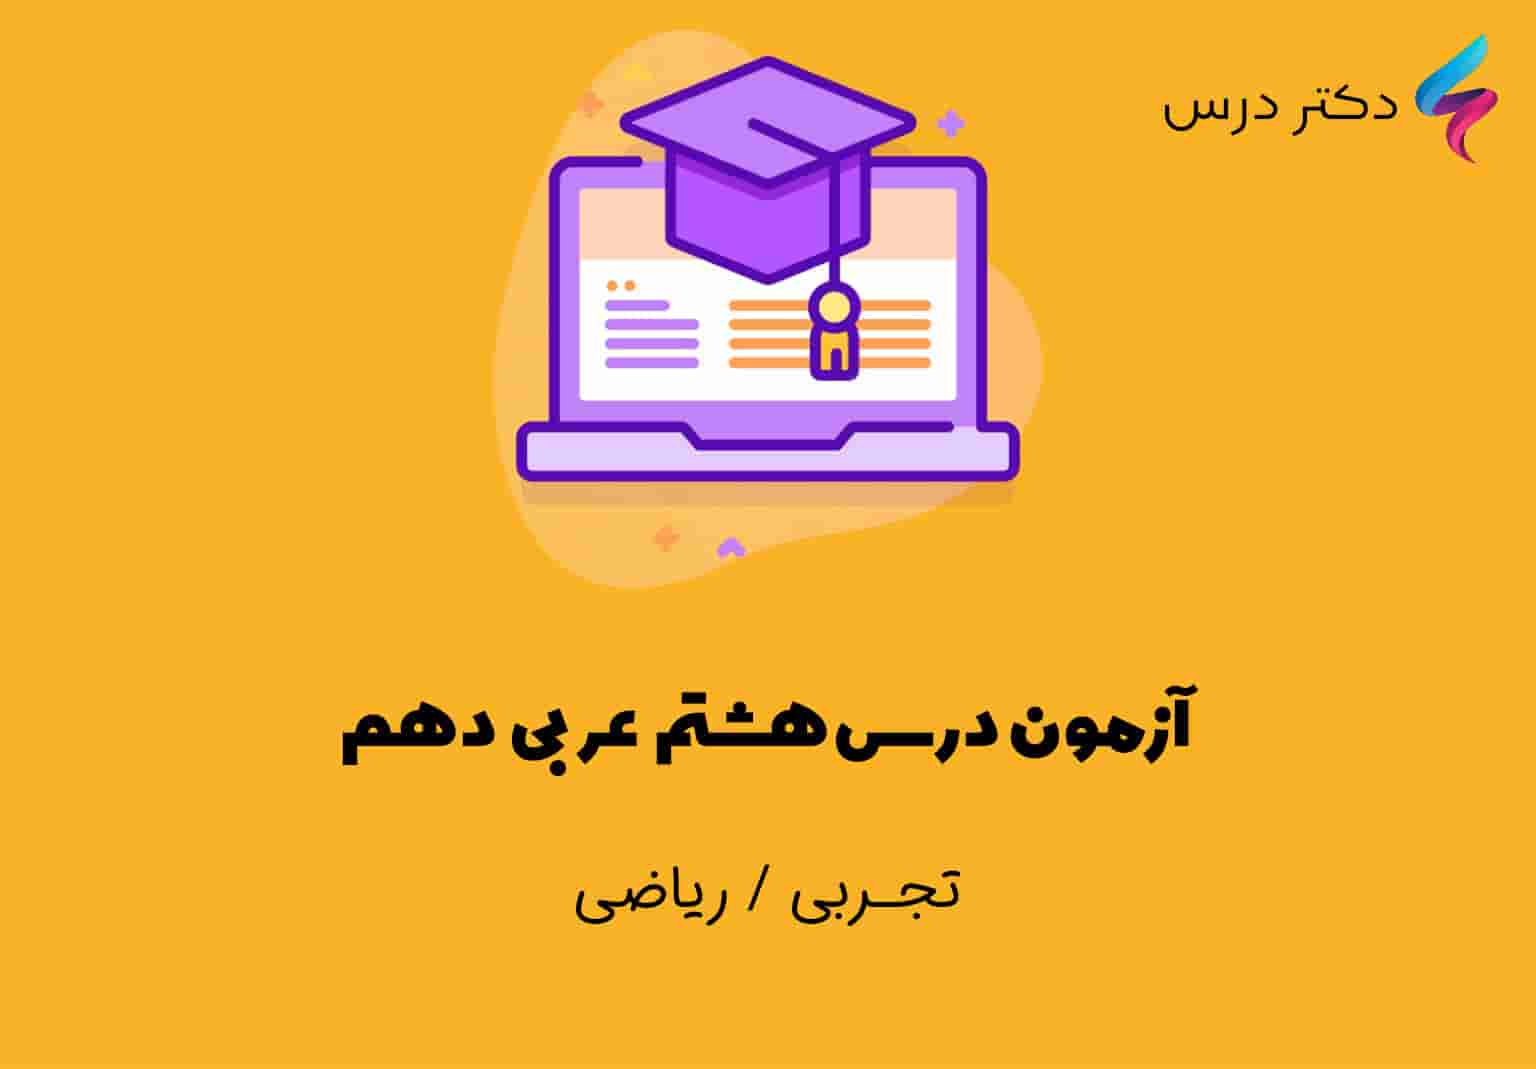 آزمون درس هشتم عربی دهم ریاضی و تجربی | اسم فاعل، اسم مفعول و اسم مبالغه